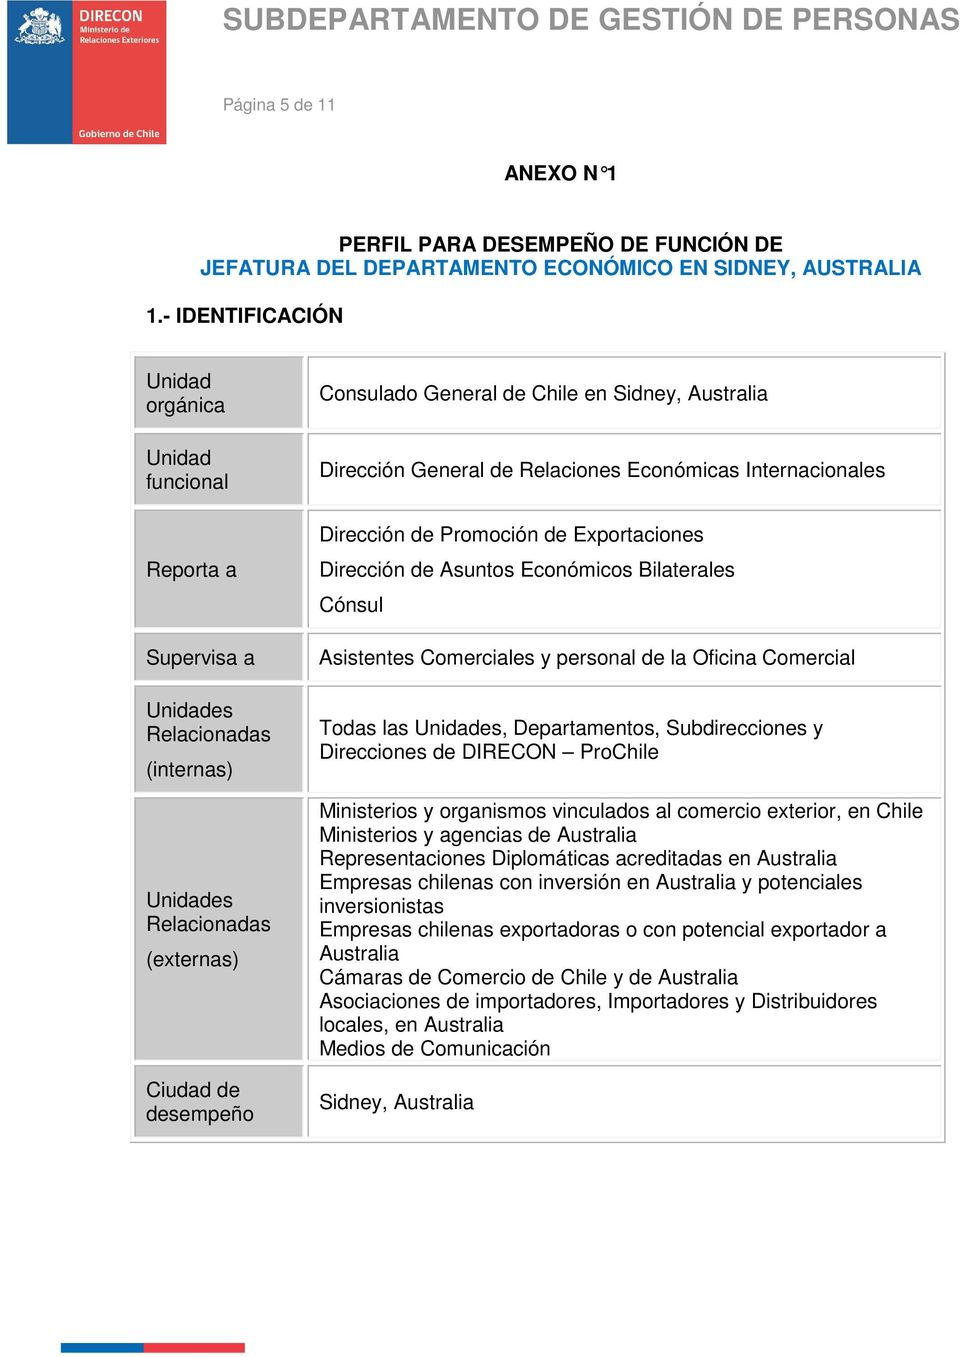 Australia Dirección General de Relaciones Económicas Internacionales Dirección de Promoción de Exportaciones Dirección de Asuntos Económicos Bilaterales Cónsul Asistentes Comerciales y personal de la